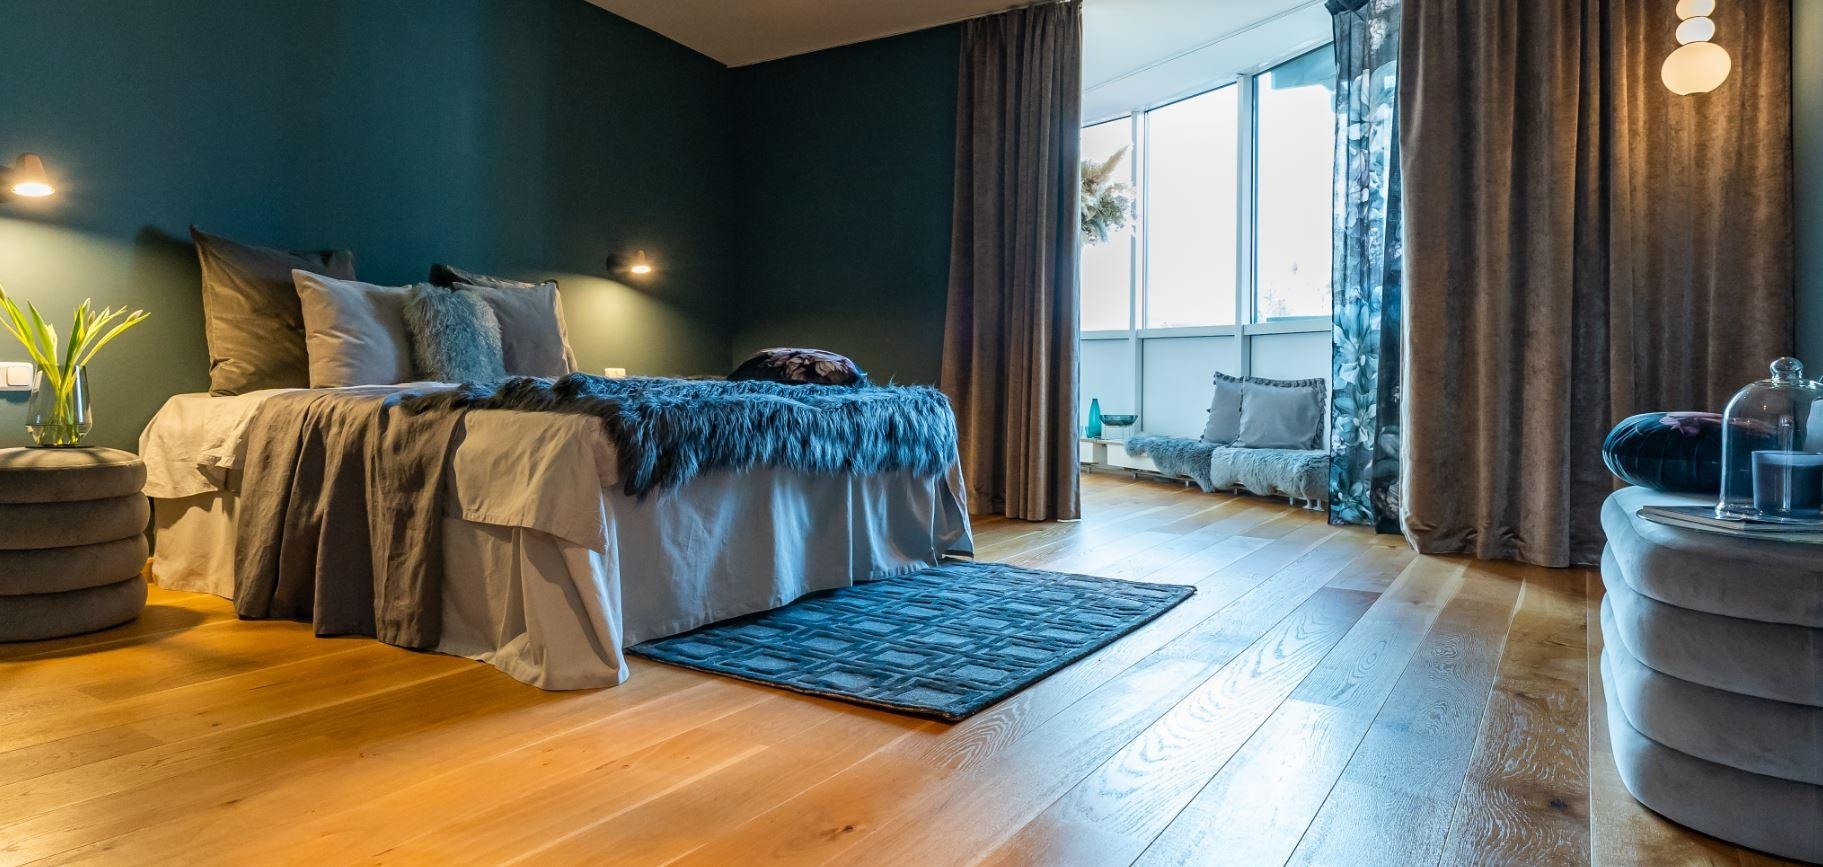 #schlafzimmer in #Blautöne #homestaging